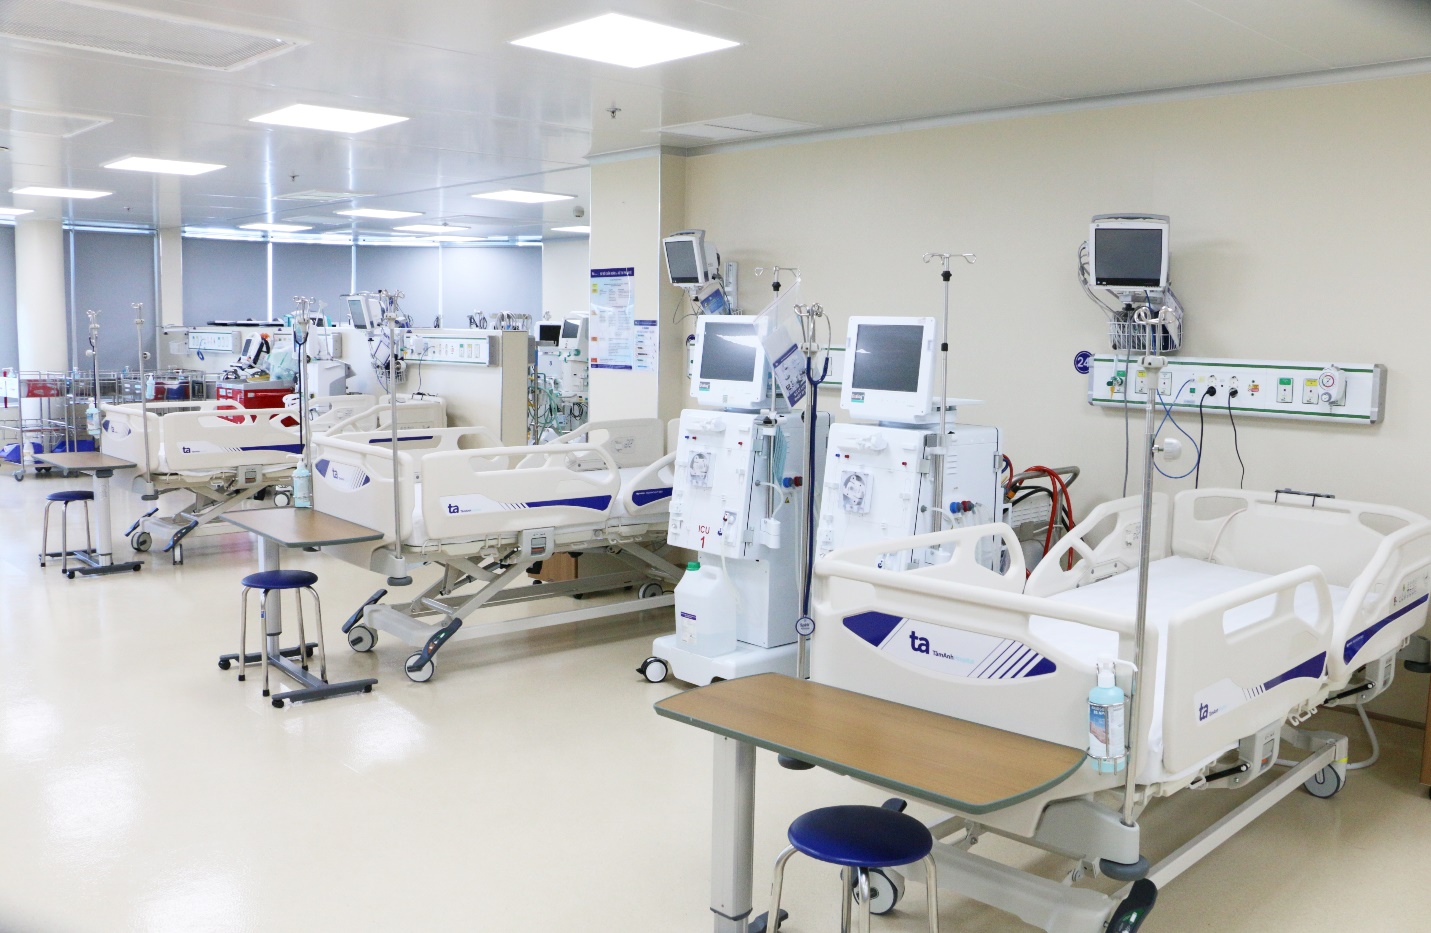 Ra mắt Trạm cấp cứu vệ tinh 115: Bệnh viện Tâm Anh góp phần nâng cao năng lực cấp cứu đột quỵ- Ảnh 2.